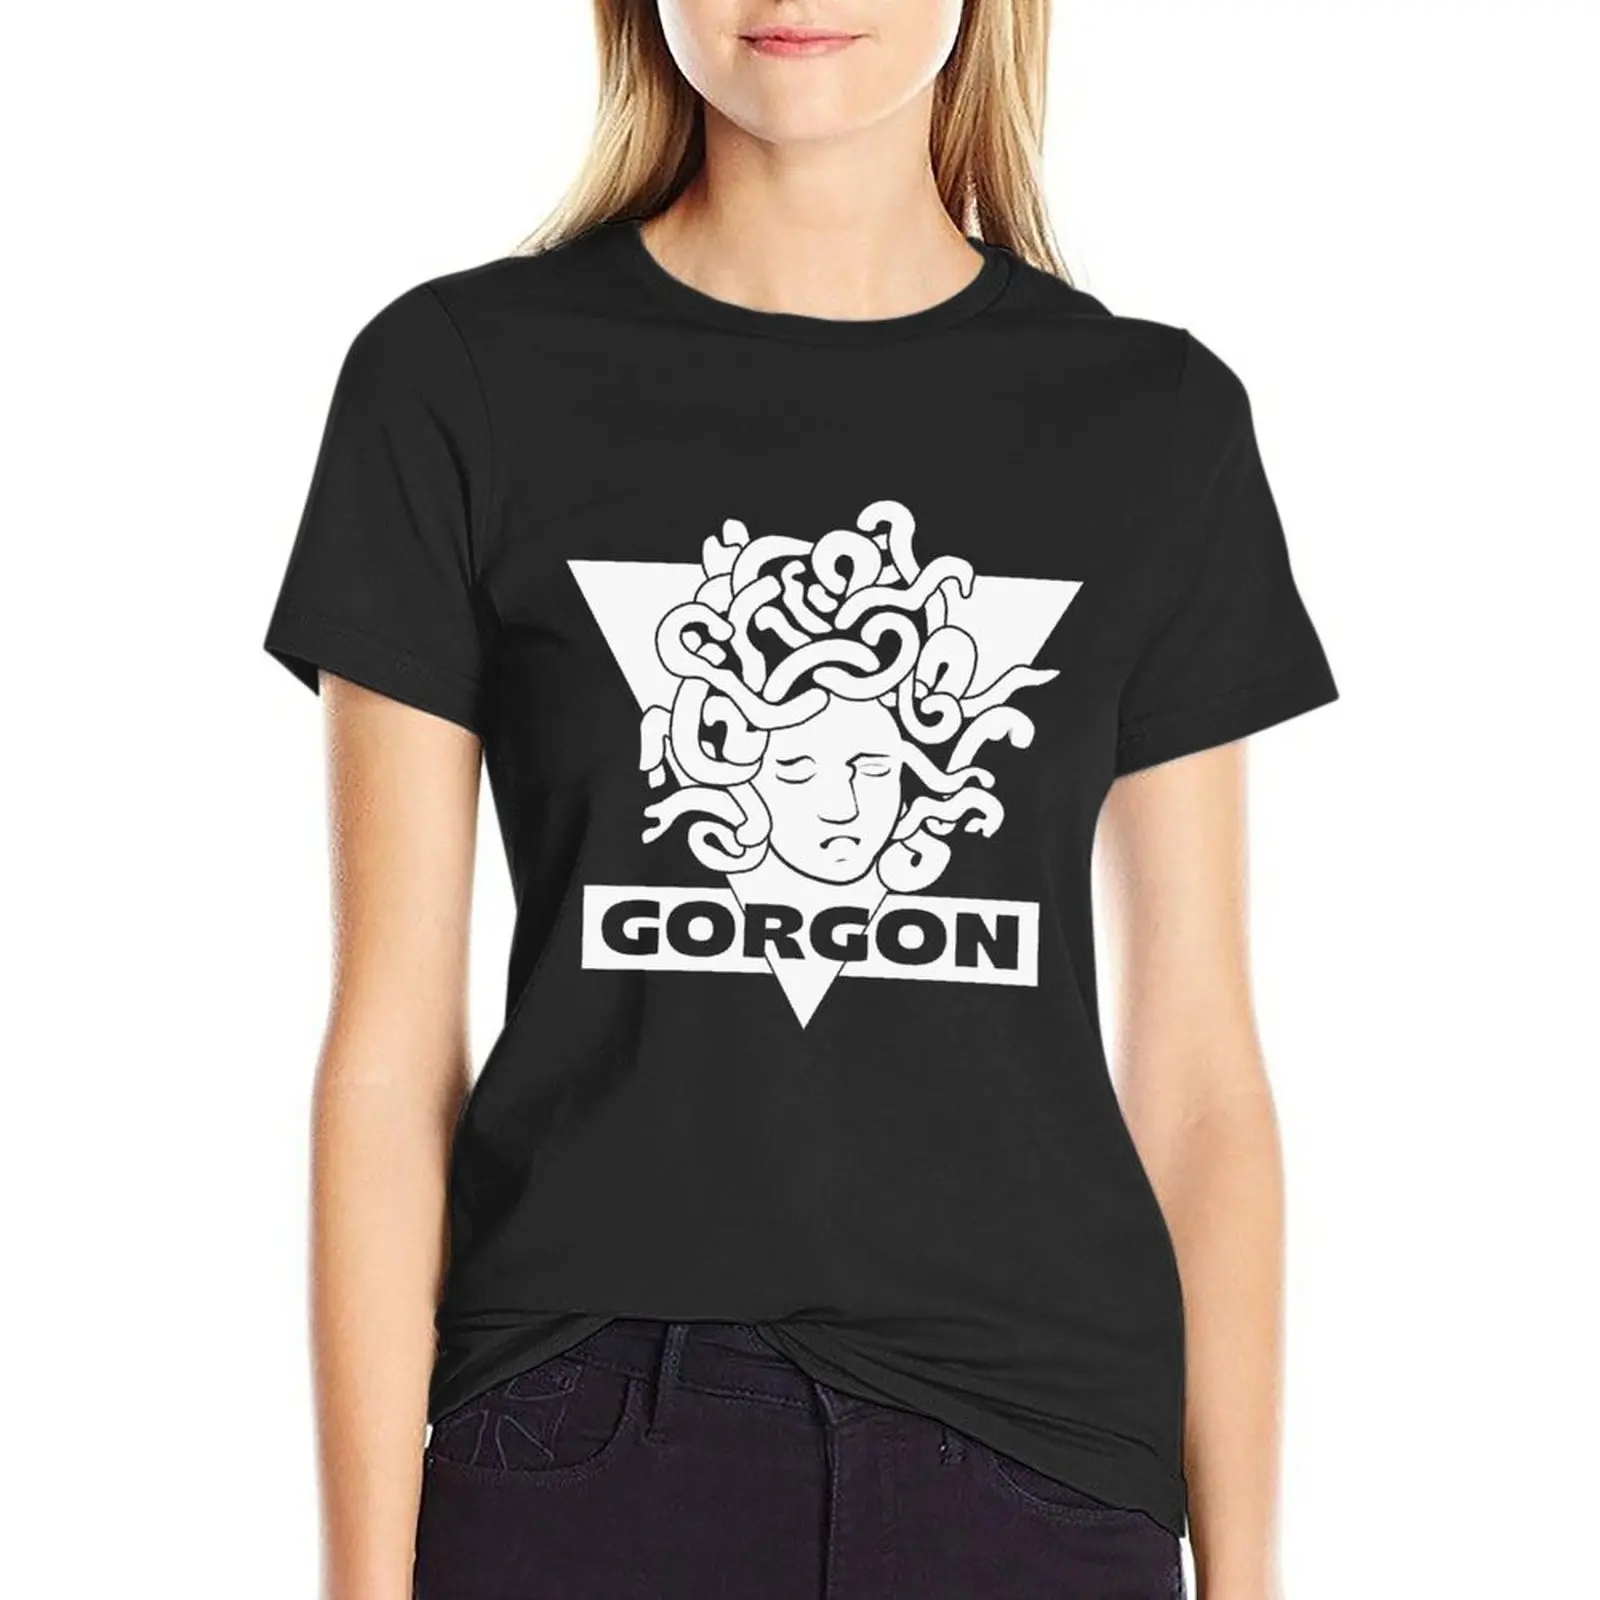 007 - Футболка Gorgon, летний топ, винтажная одежда, футболки, футболки с графическим рисунком, женское платье-футболка с графическим рисунком